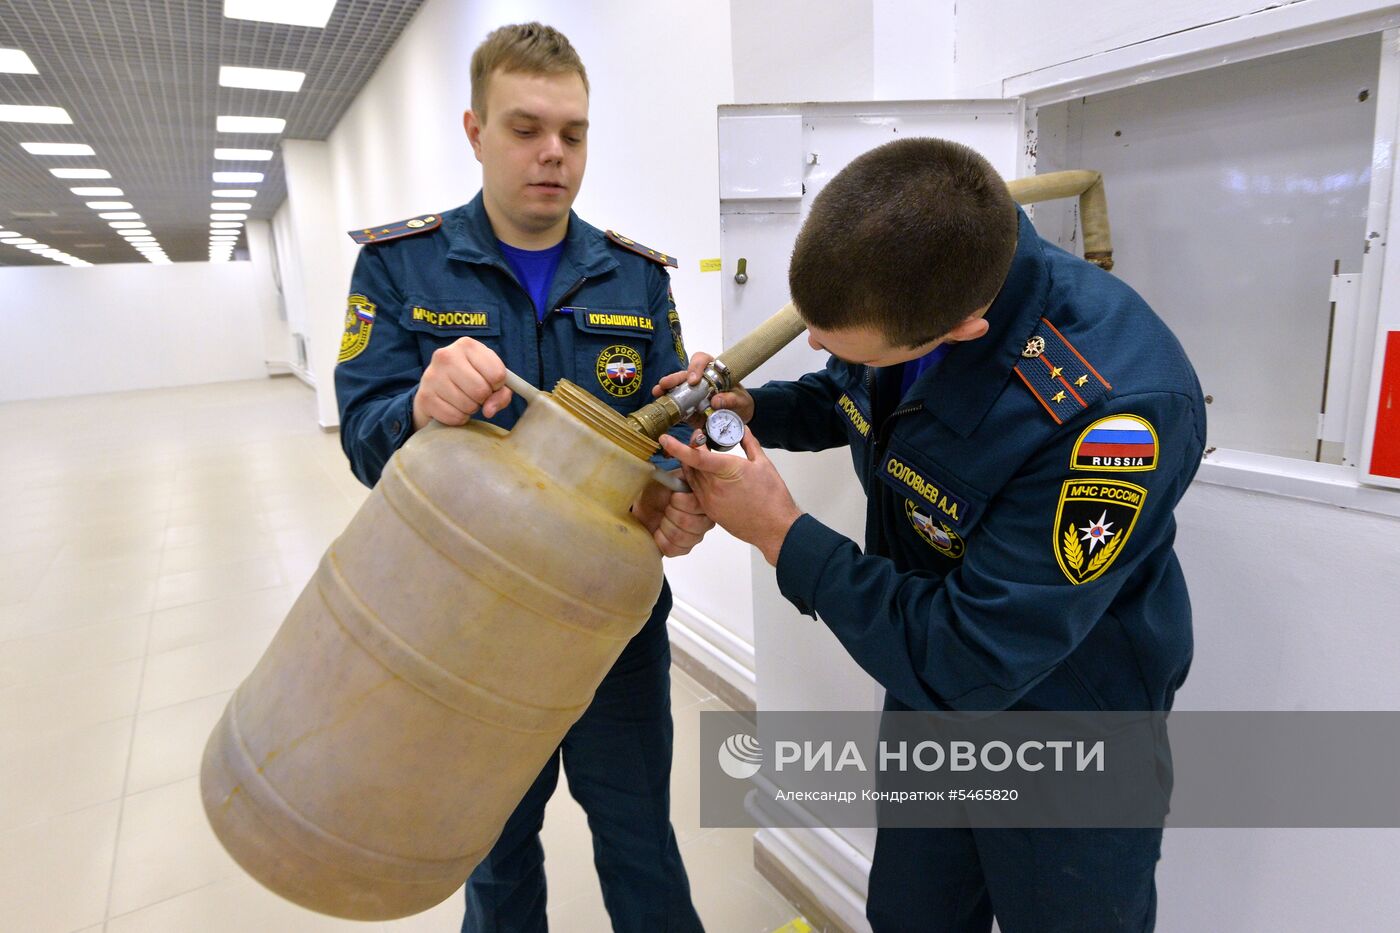 Проверка пожарной безопасности в ТЦ "Кольцо"  в Челябинске